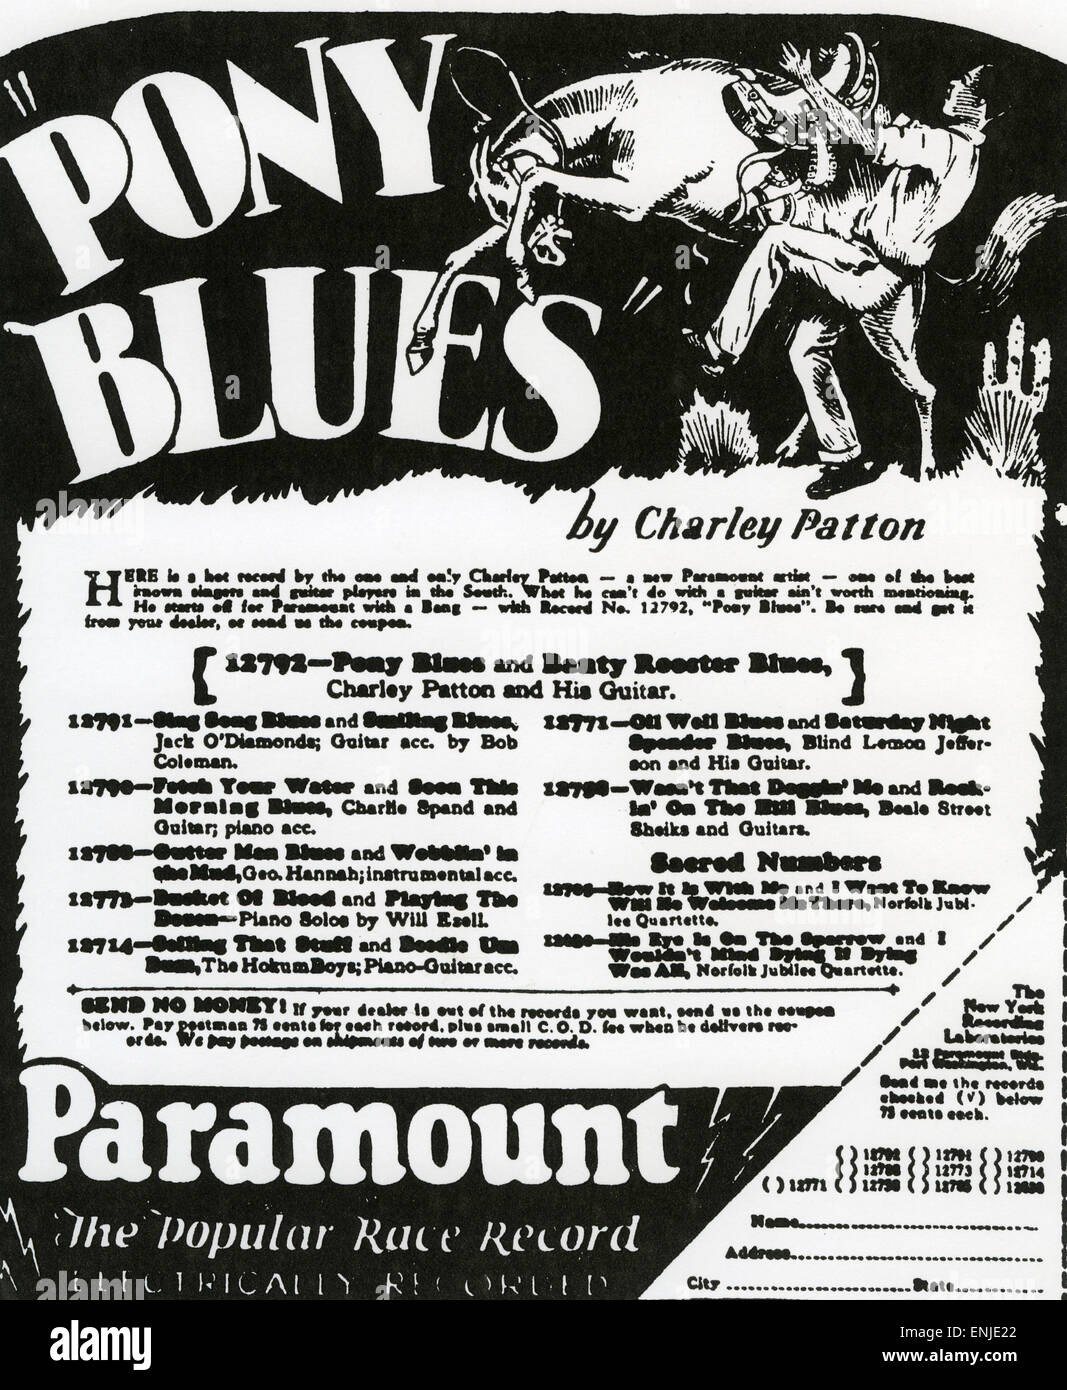 CHARLEY PATTON (1890?-1934) Noi Delta Blues musicista. Annuncio pubblicitario per la sua registrazione 1929 Pony Blues Foto Stock